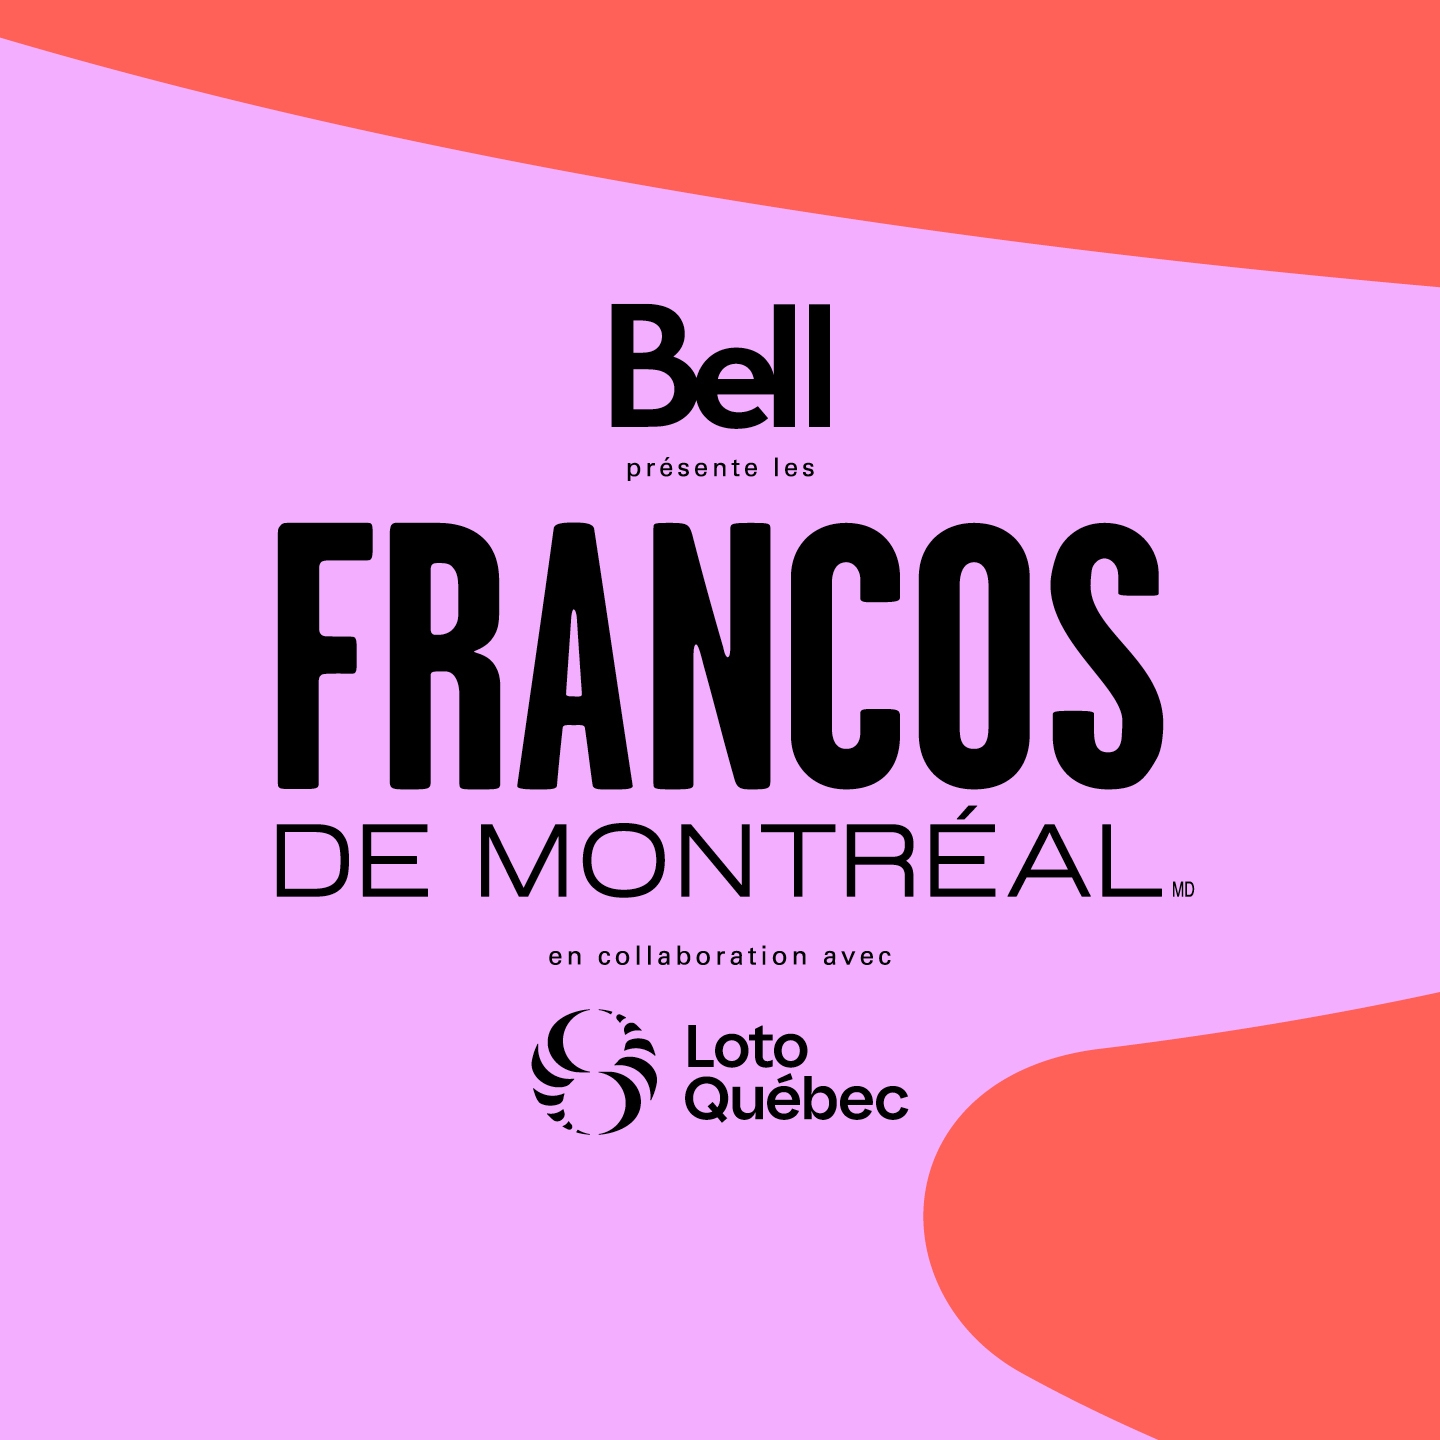 Billets Francos de Montréal